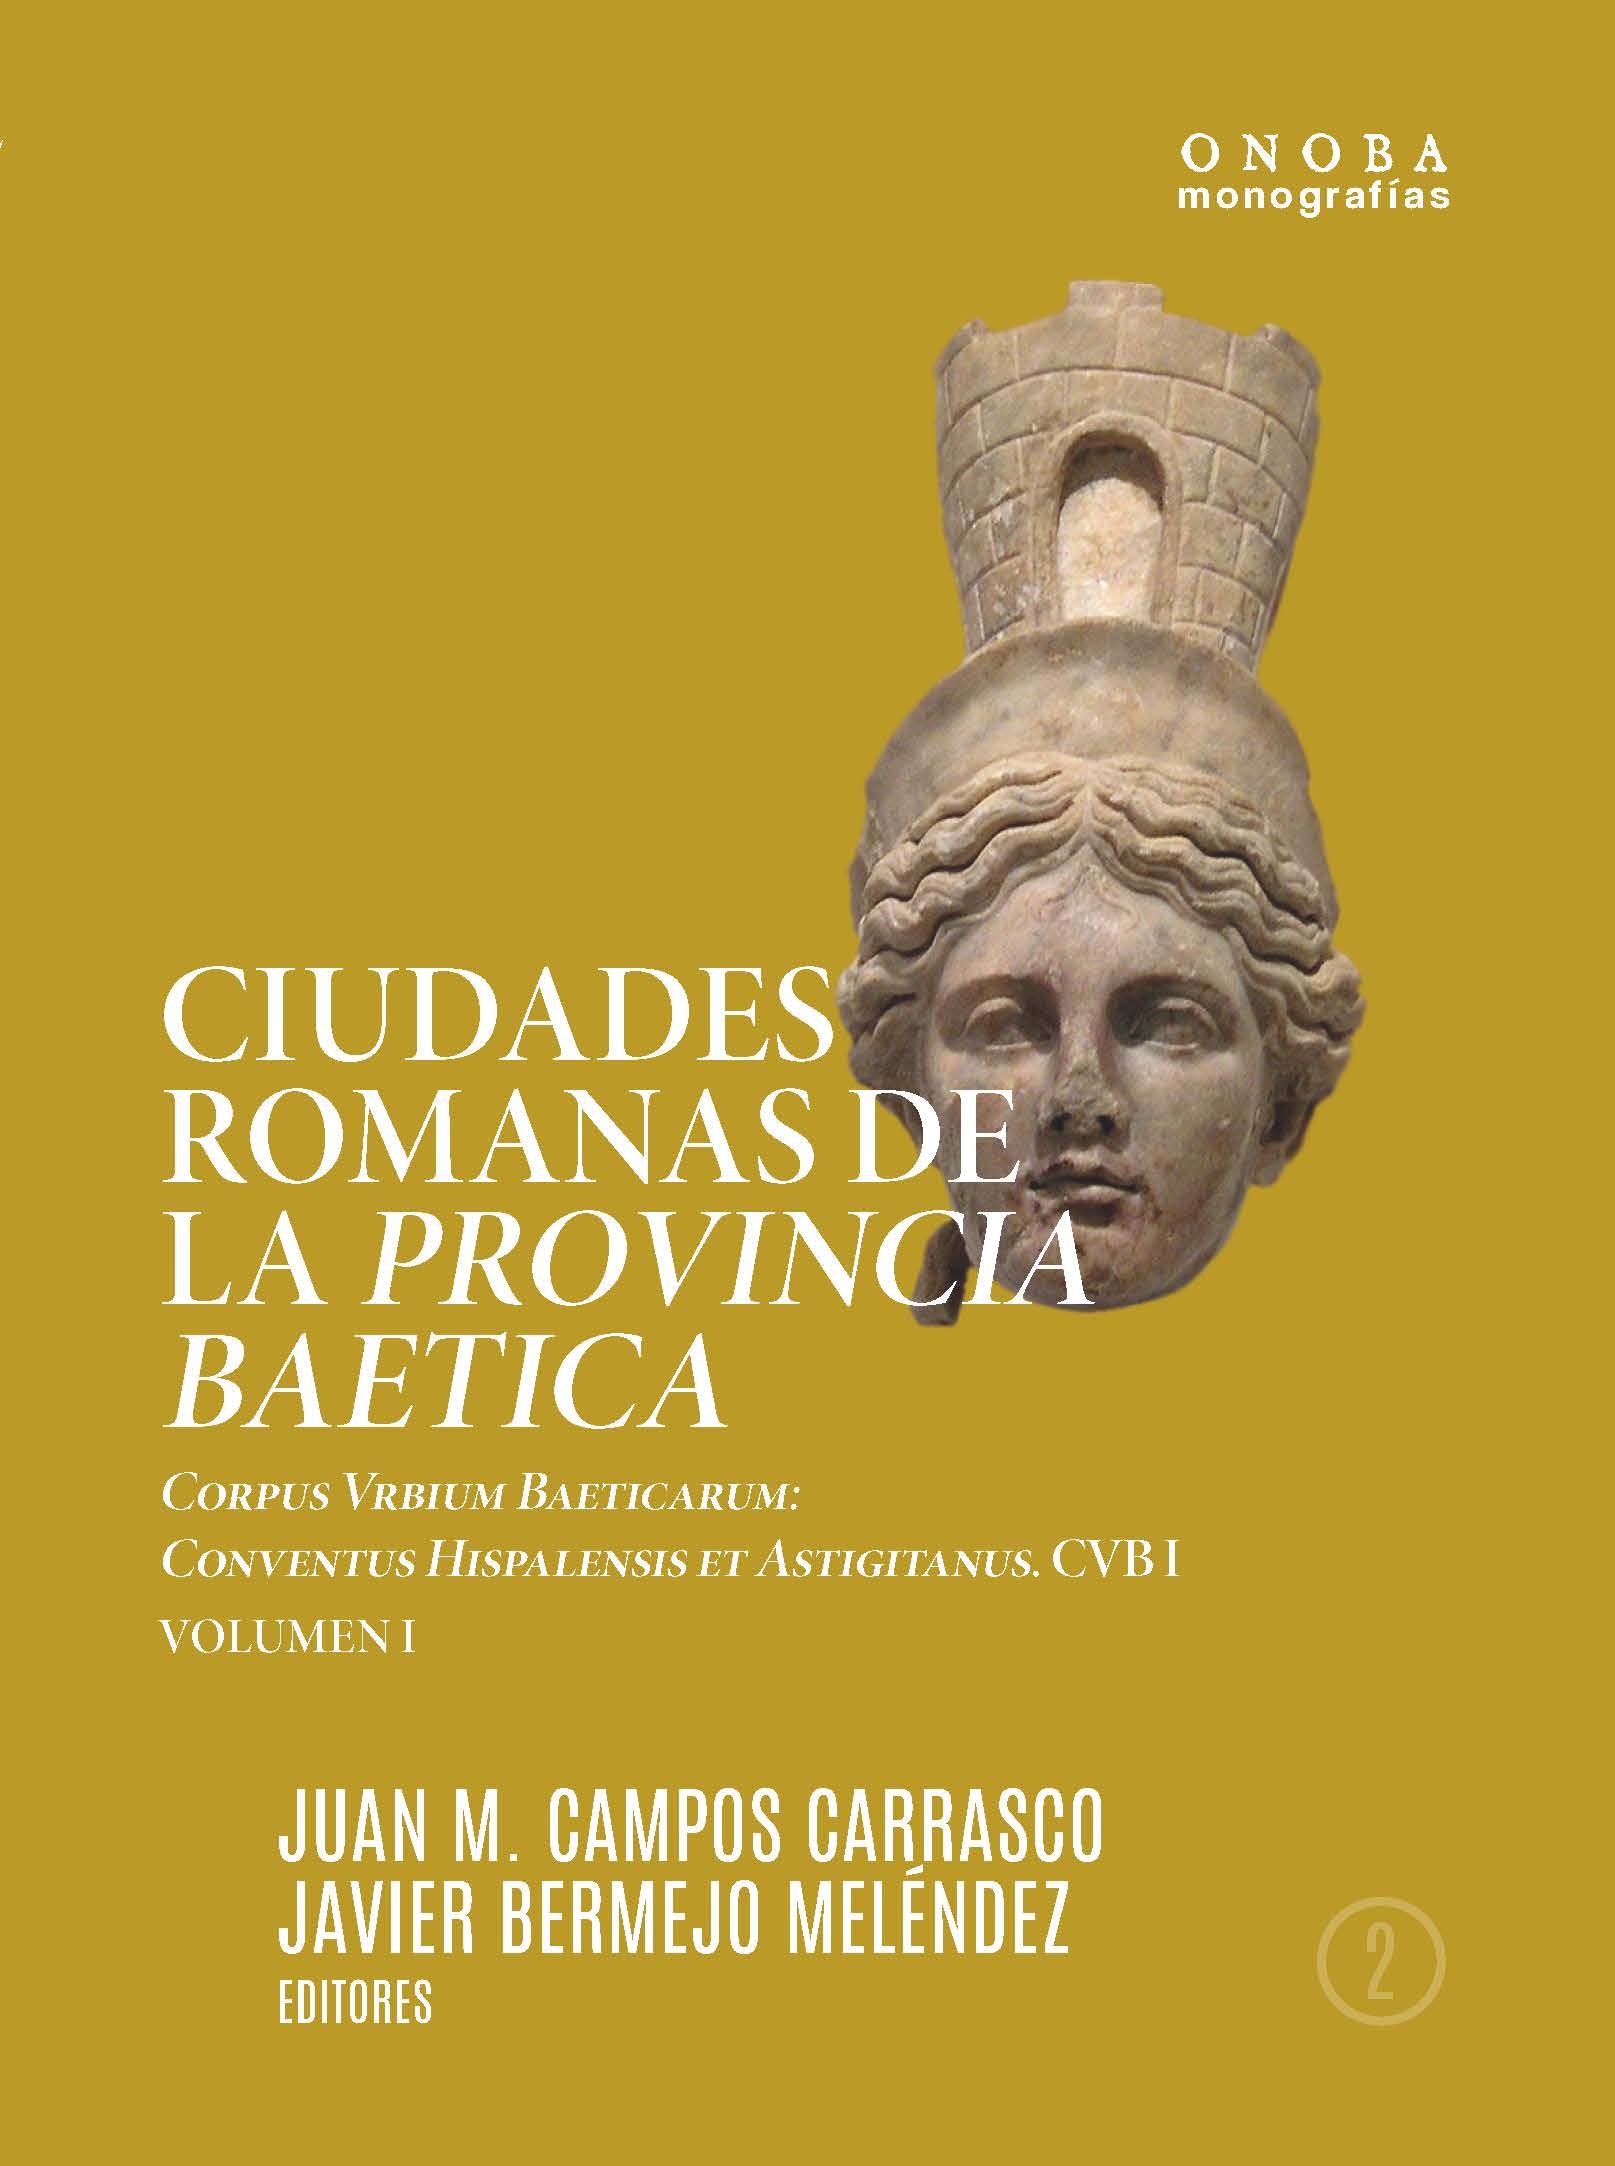 Imagen de portada del libro Ciudades romanas de la provincia Baética